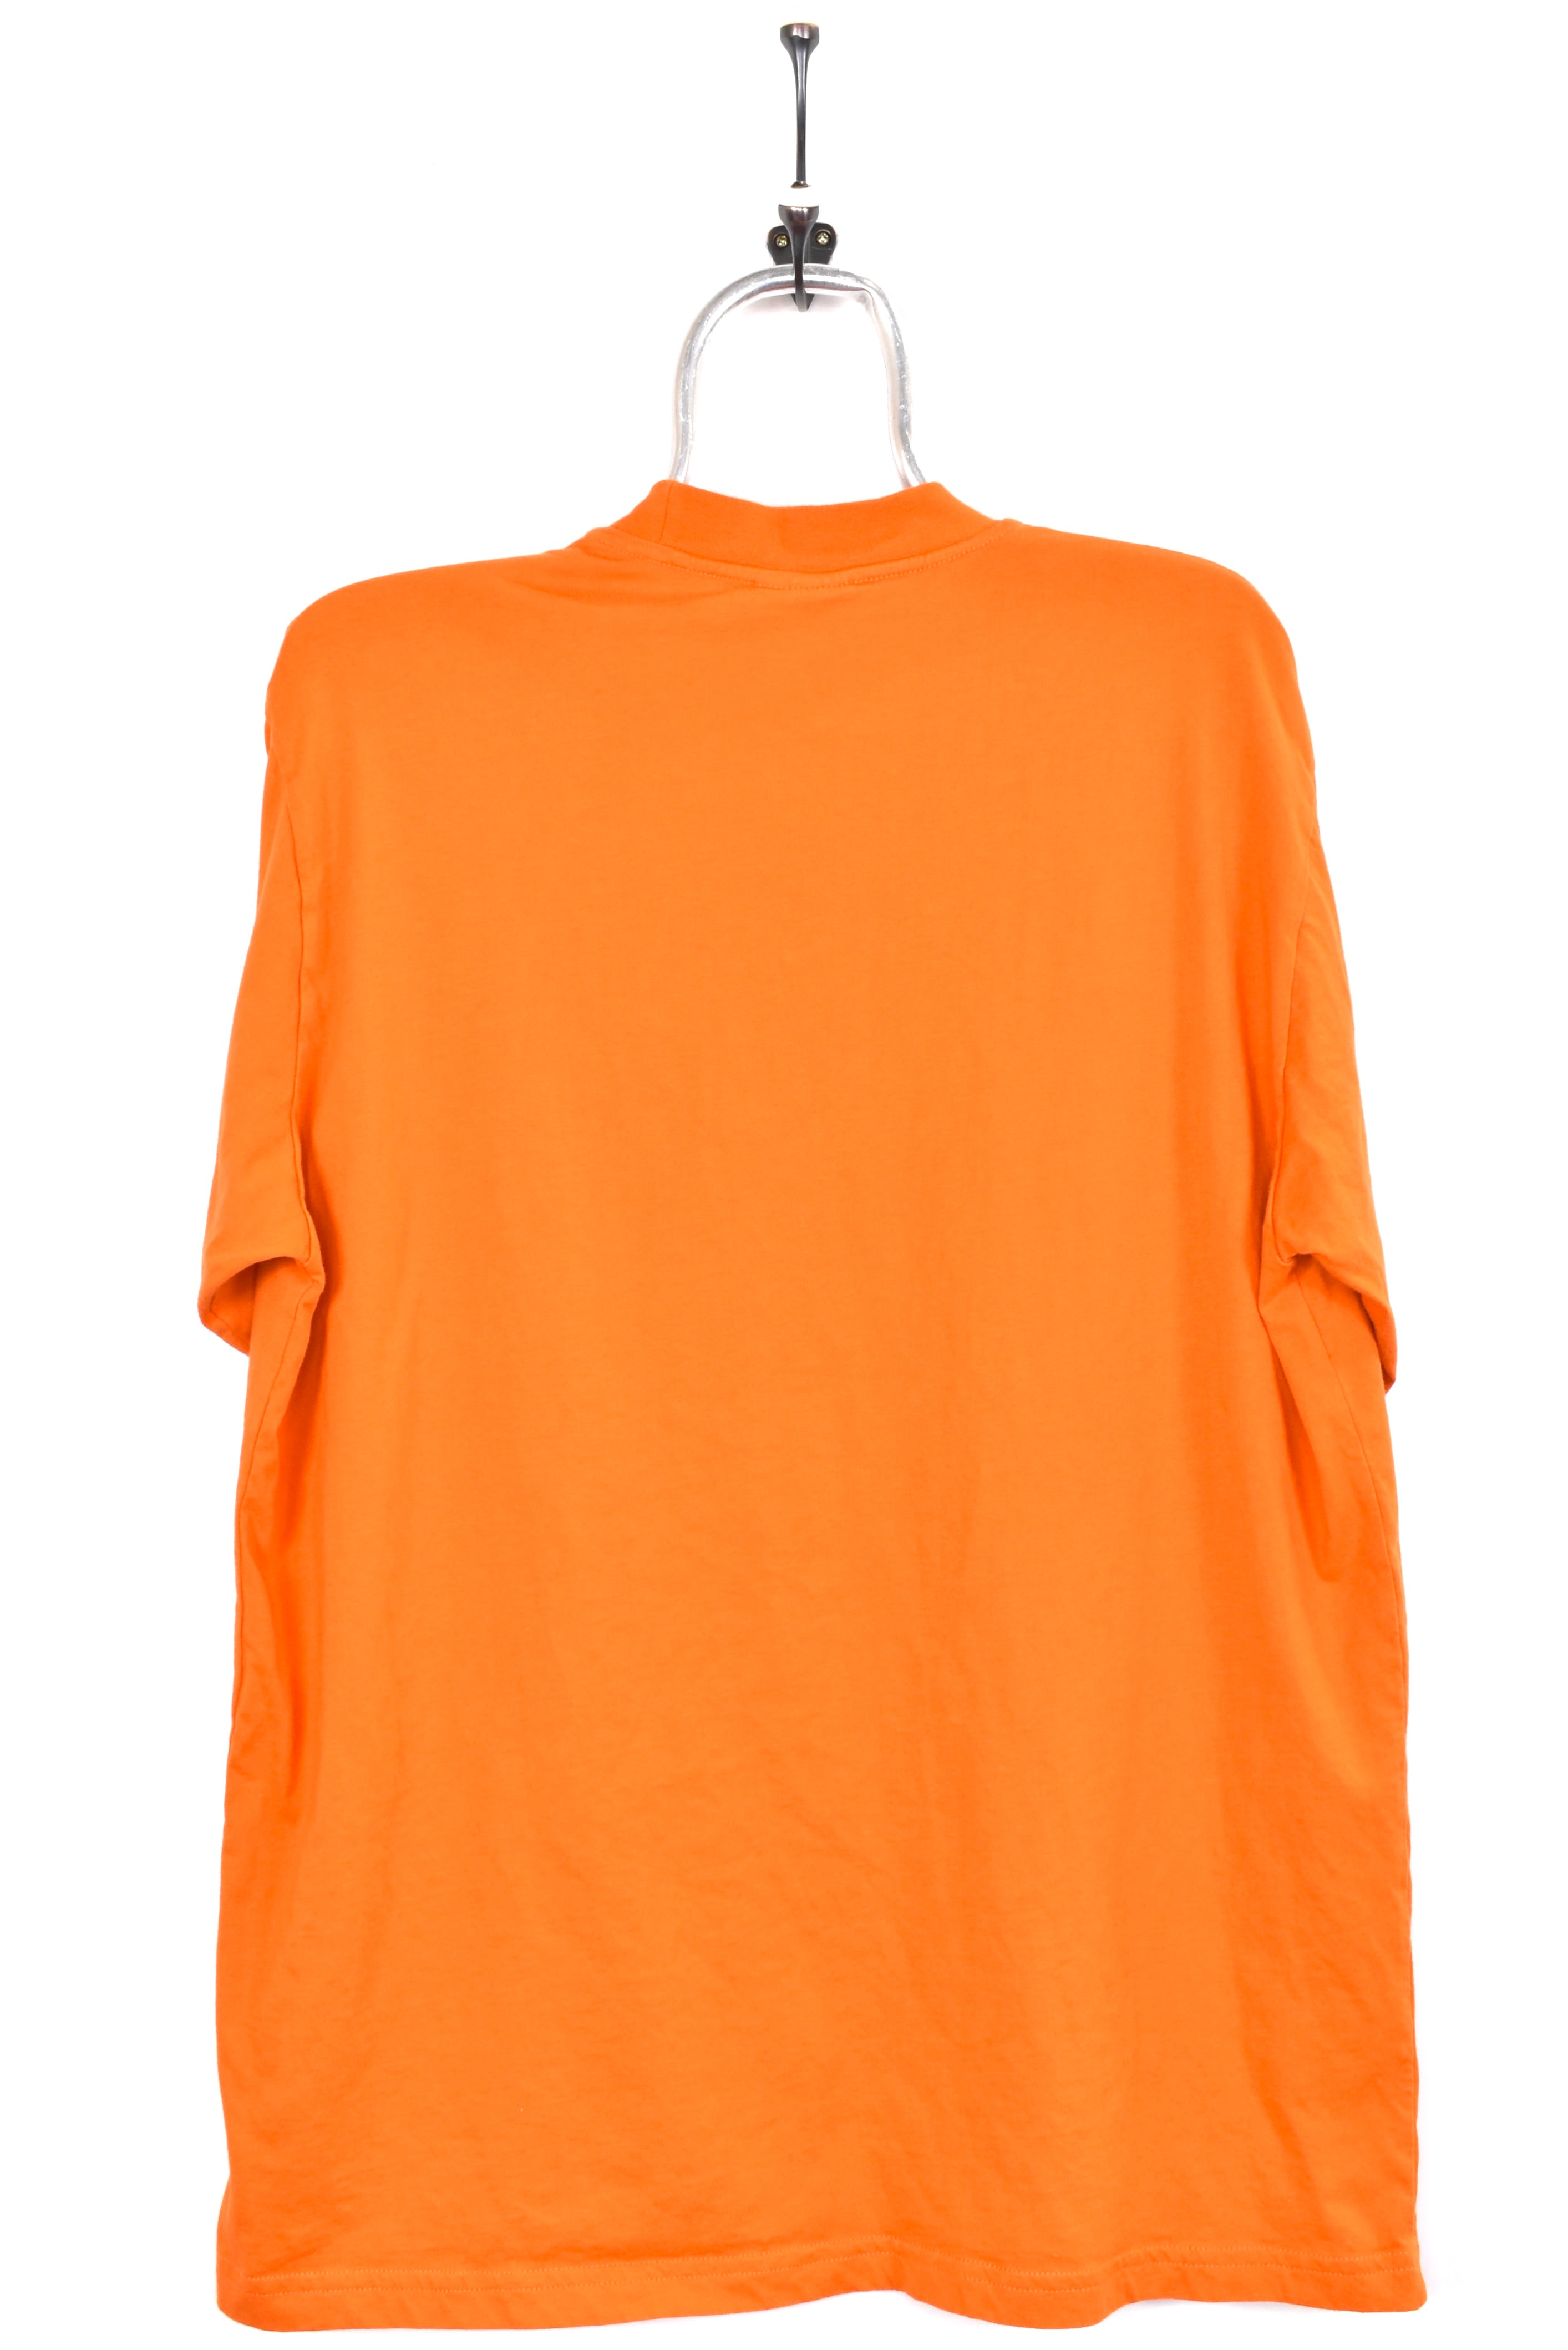 Vintage UEFA Euro 2000 shirt, orange graphic tee - AU Large PRO SPORT